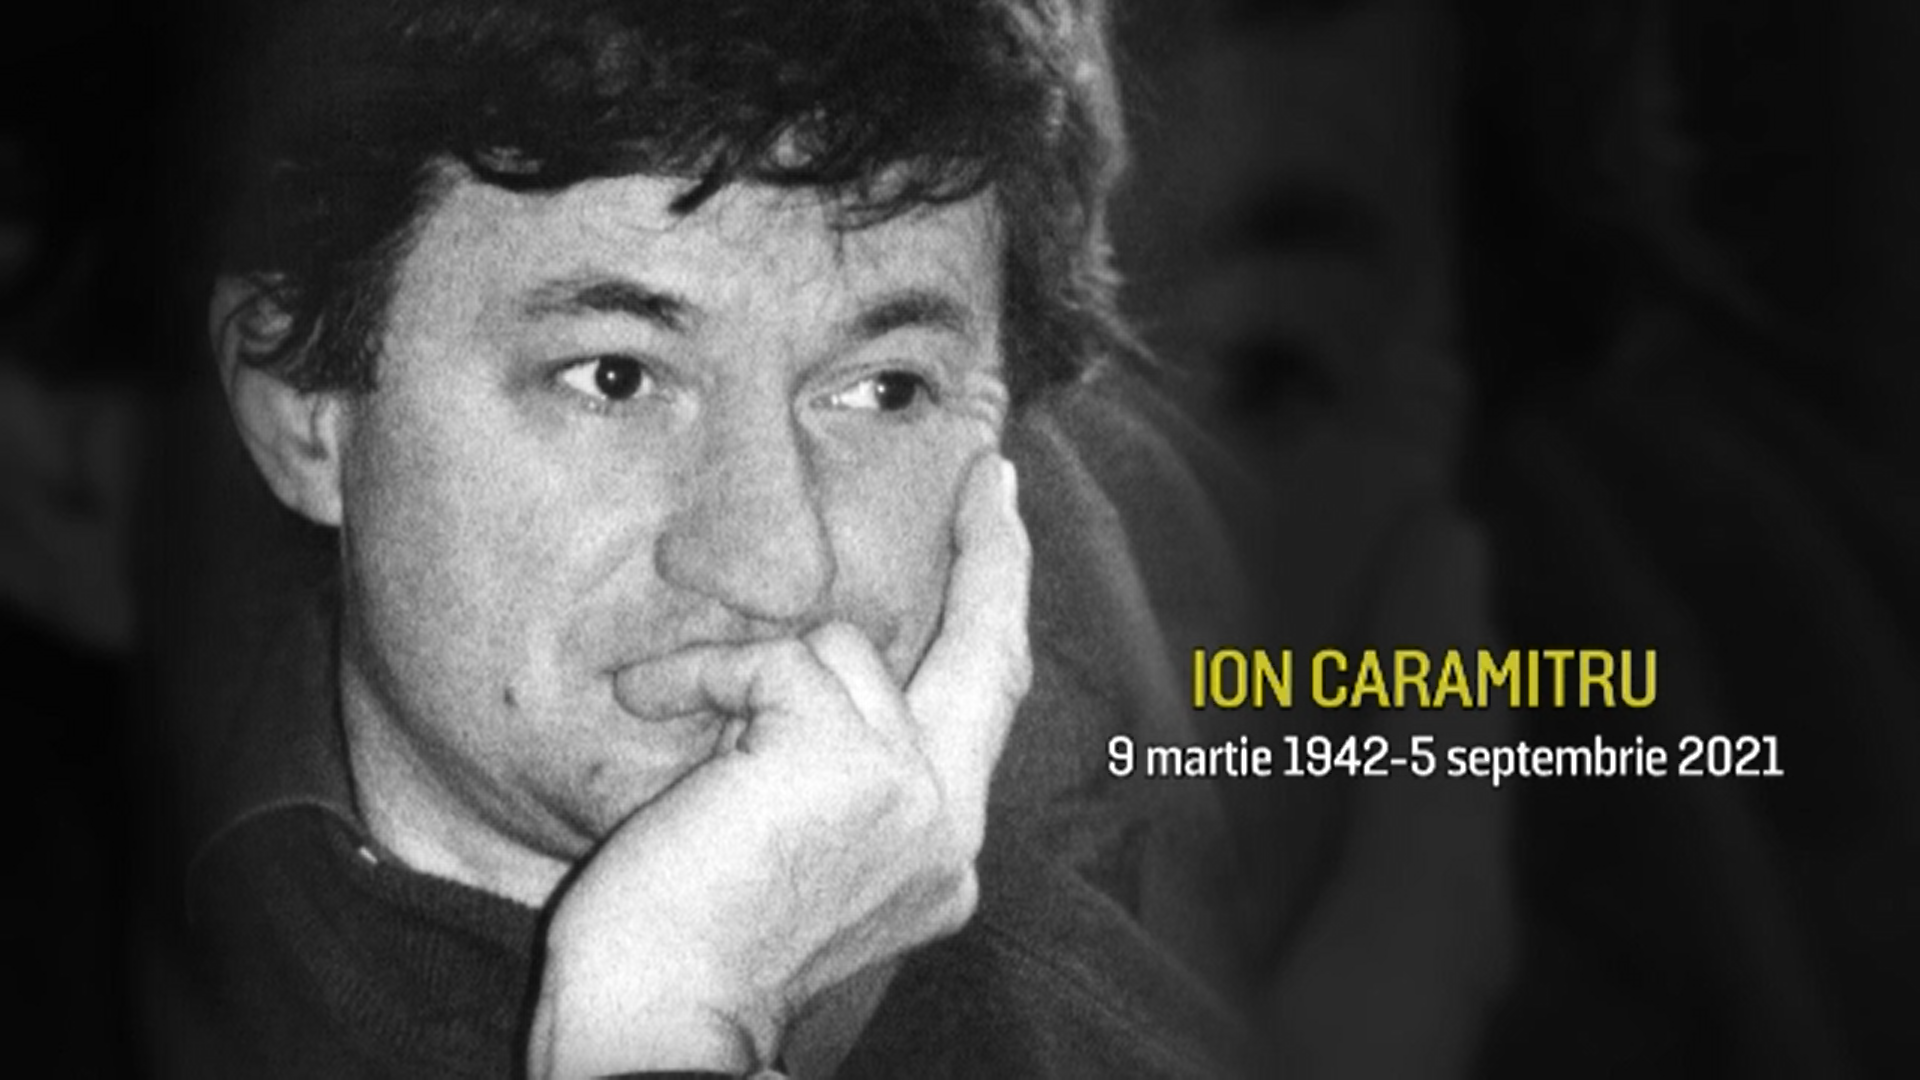 TNB a deschis o carte de condoleanţe pentru cei care vor să îi lase un ultim mesaj lui Ion Caramitru